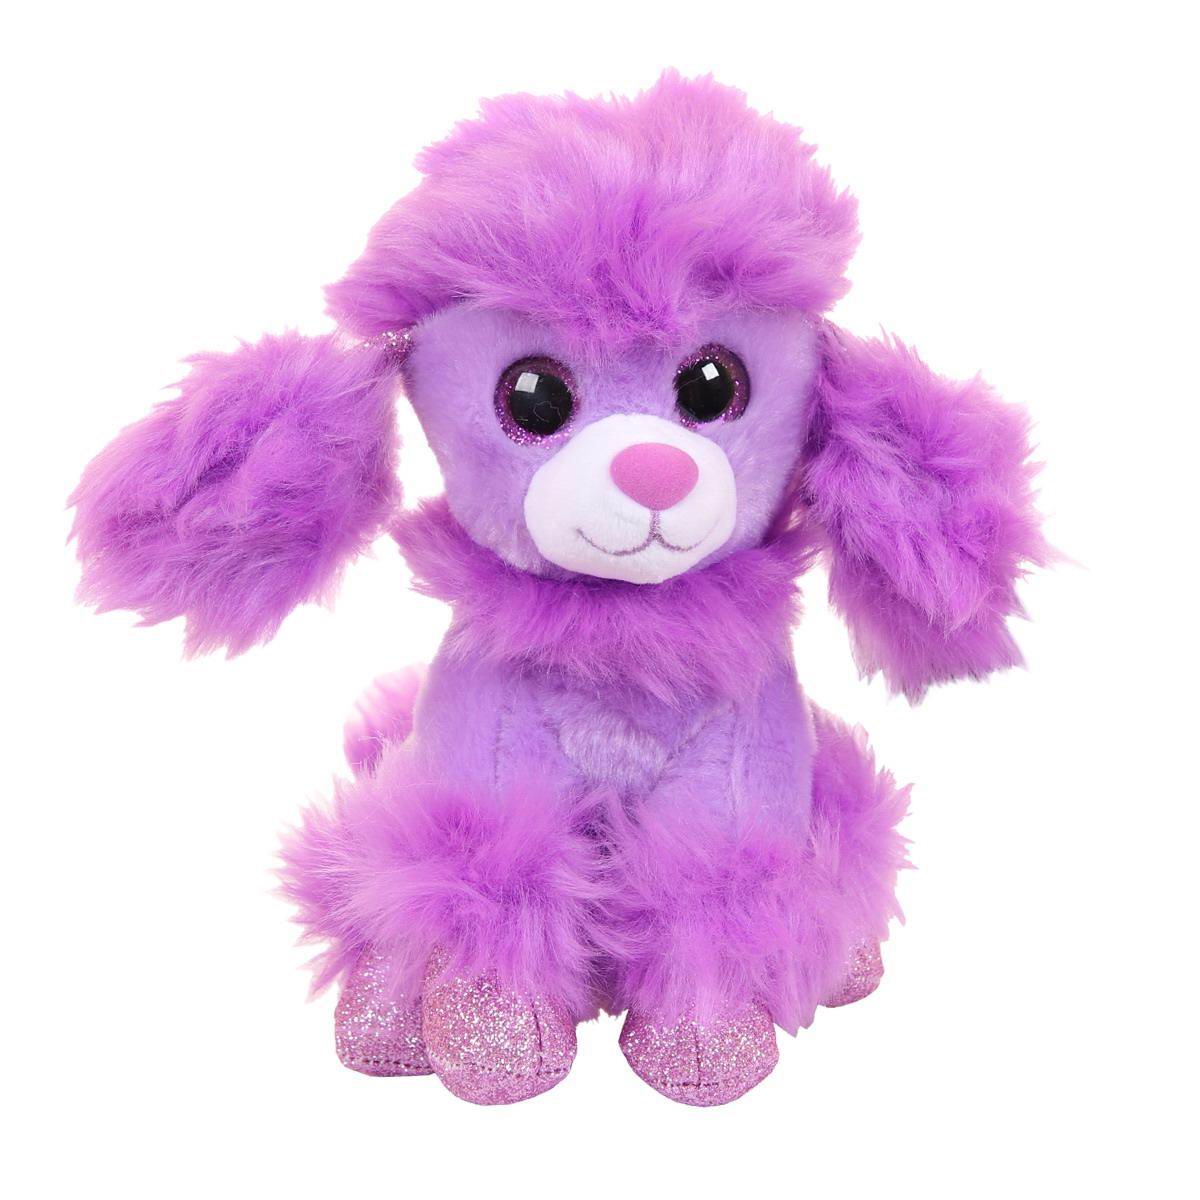 Мягкая игрушка ABtoys Собачка Карамелька, фиолетовая 14 см M0084/фиолетовый